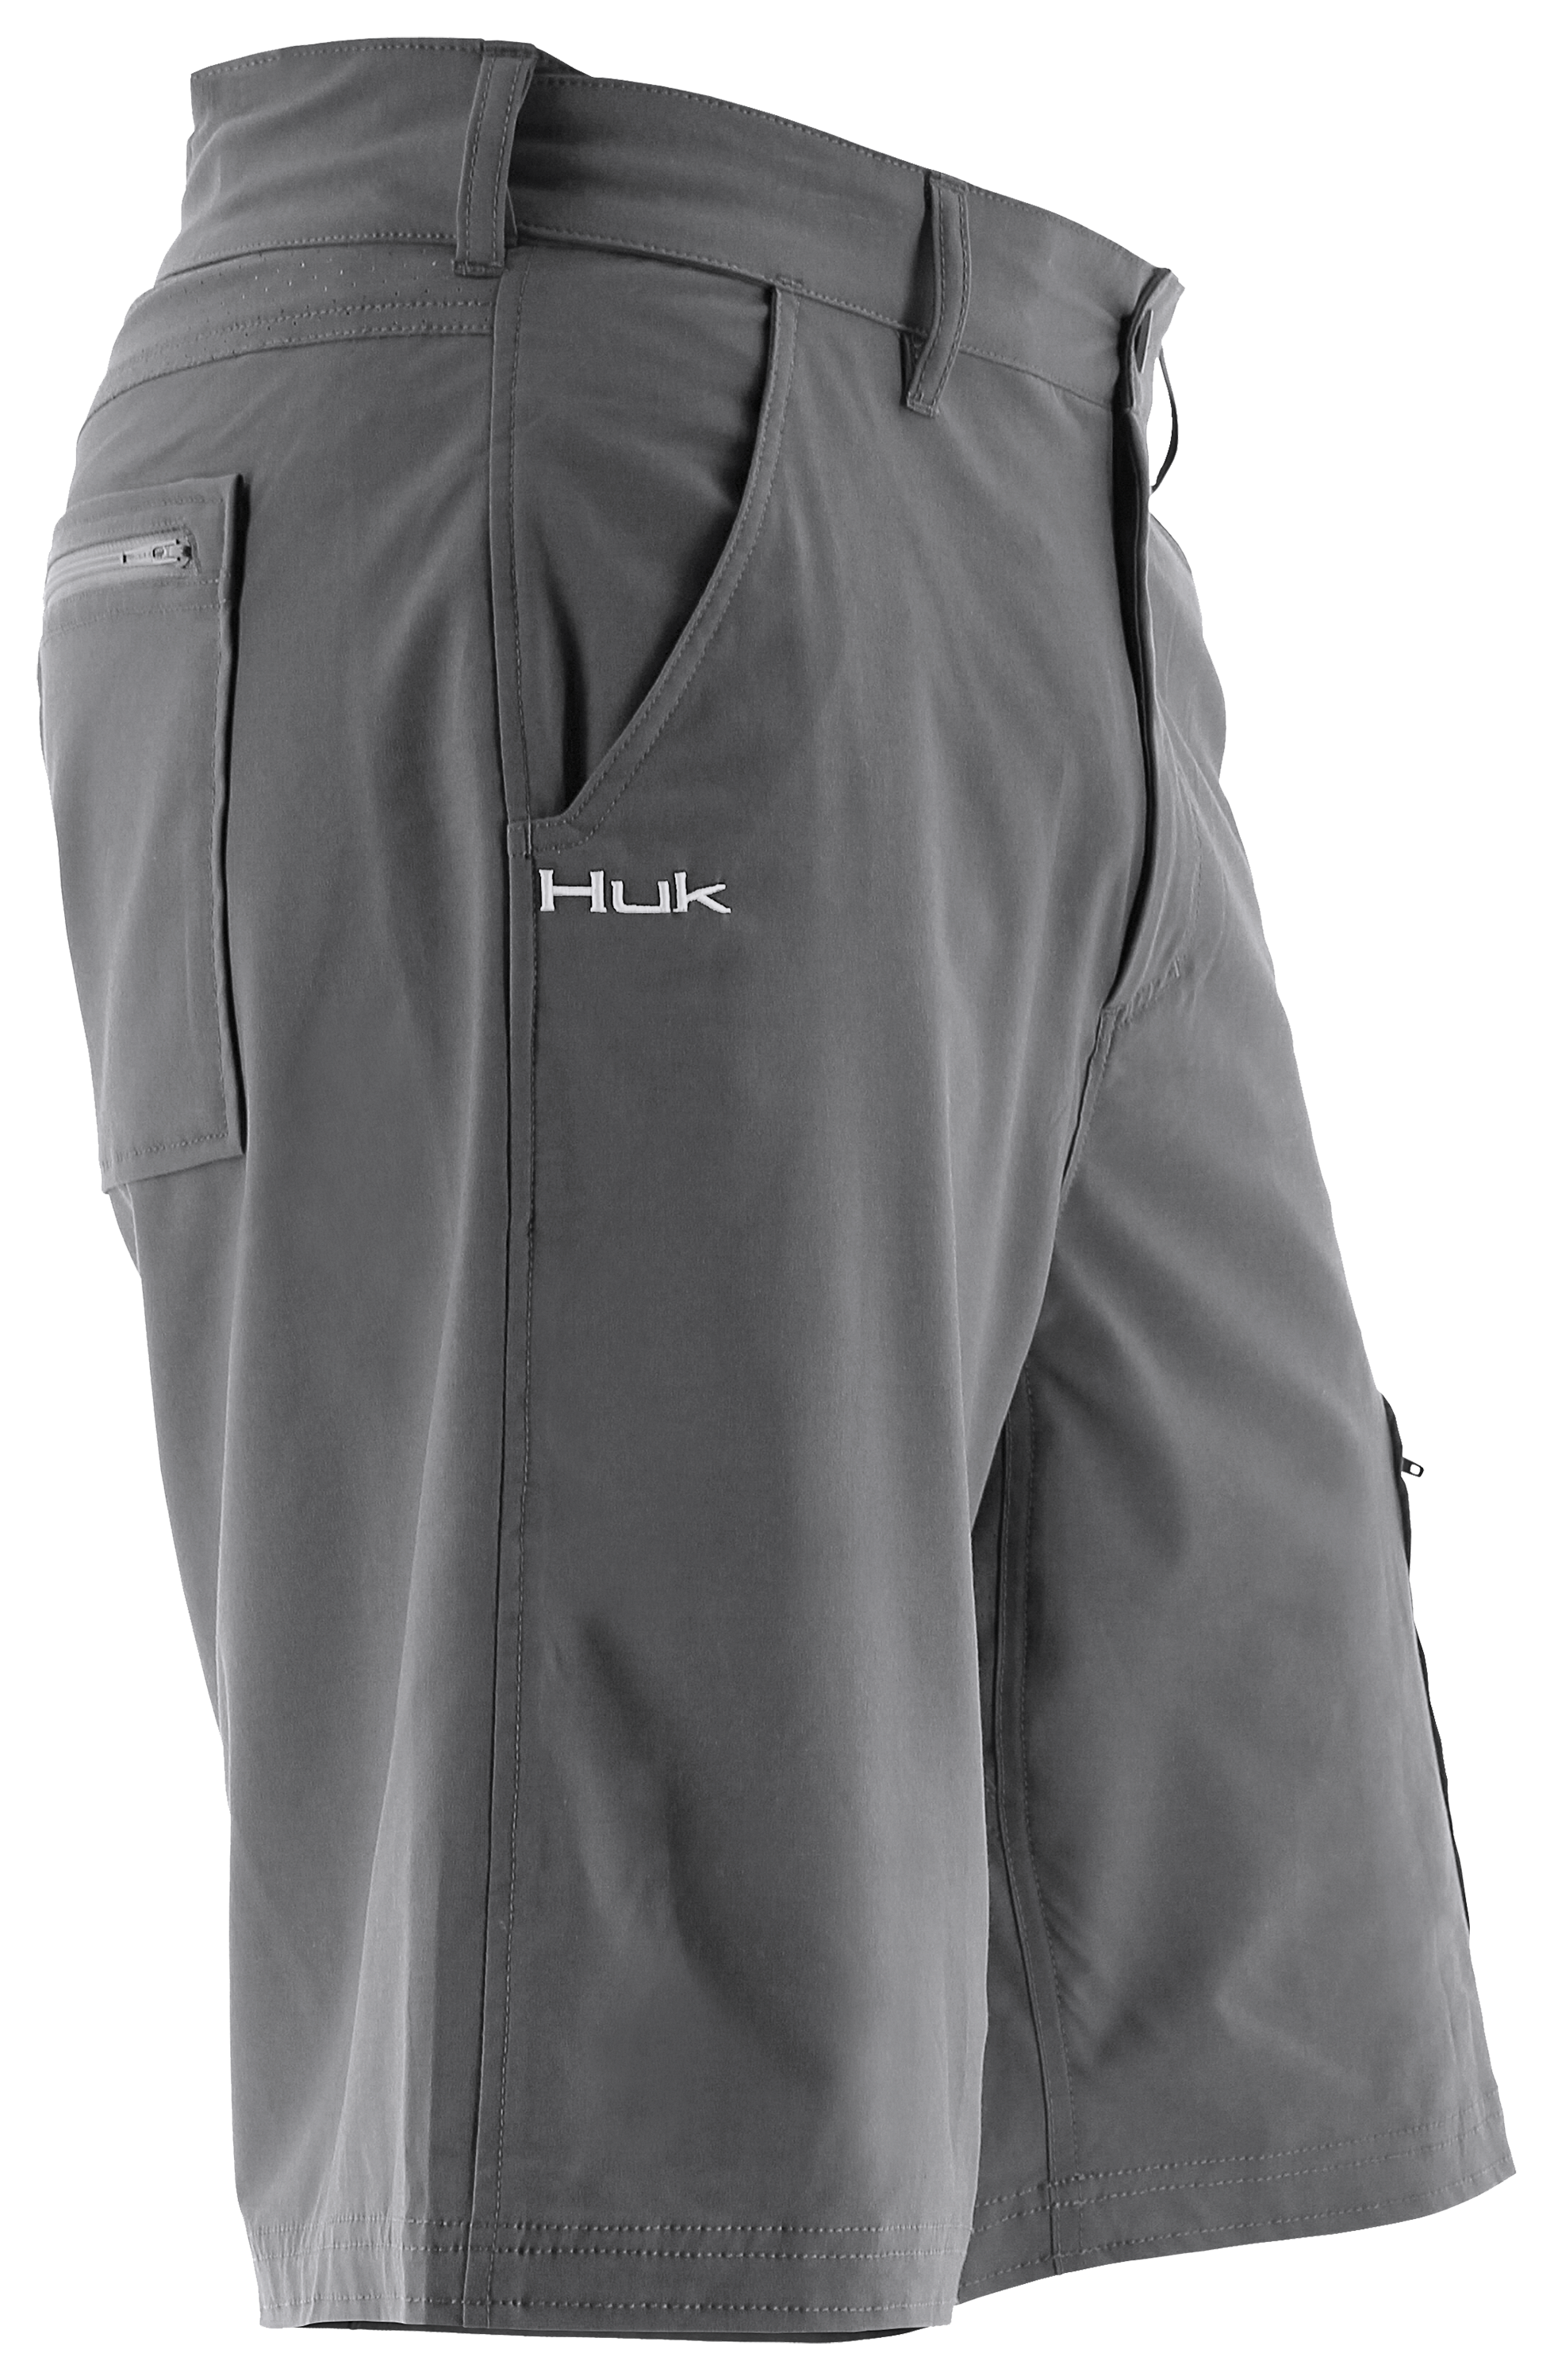 Huk NXTLVL 10.5” Men's Performance Short - Bowtreader